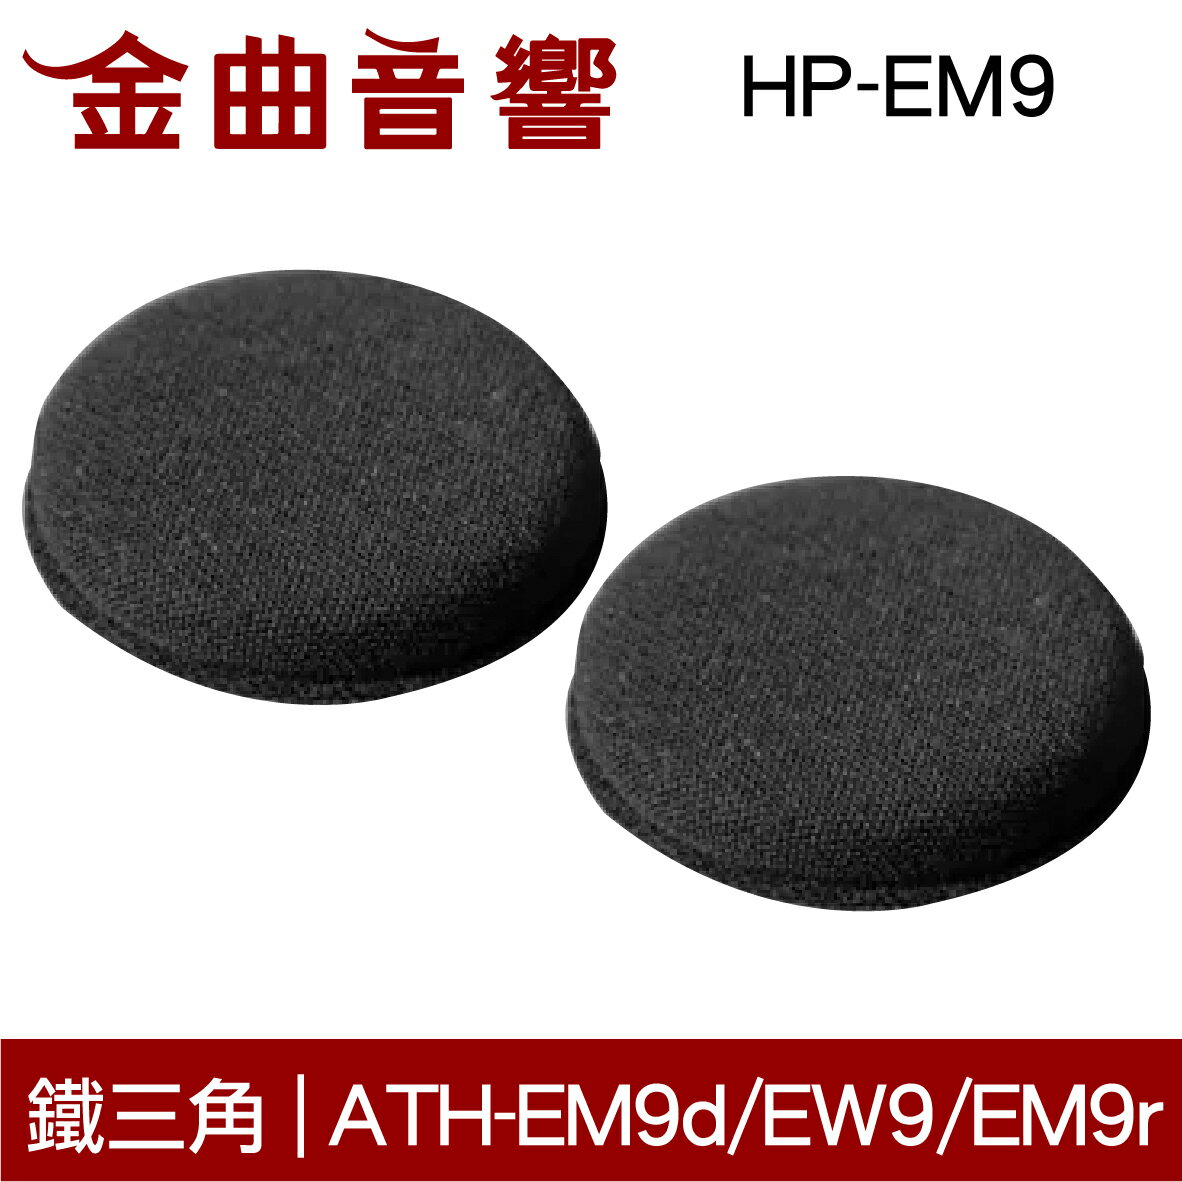 鐵三角 HP-EM9 替換耳罩 一對 ATH-EM9d EW9 EM9r 適用 | 金曲音響